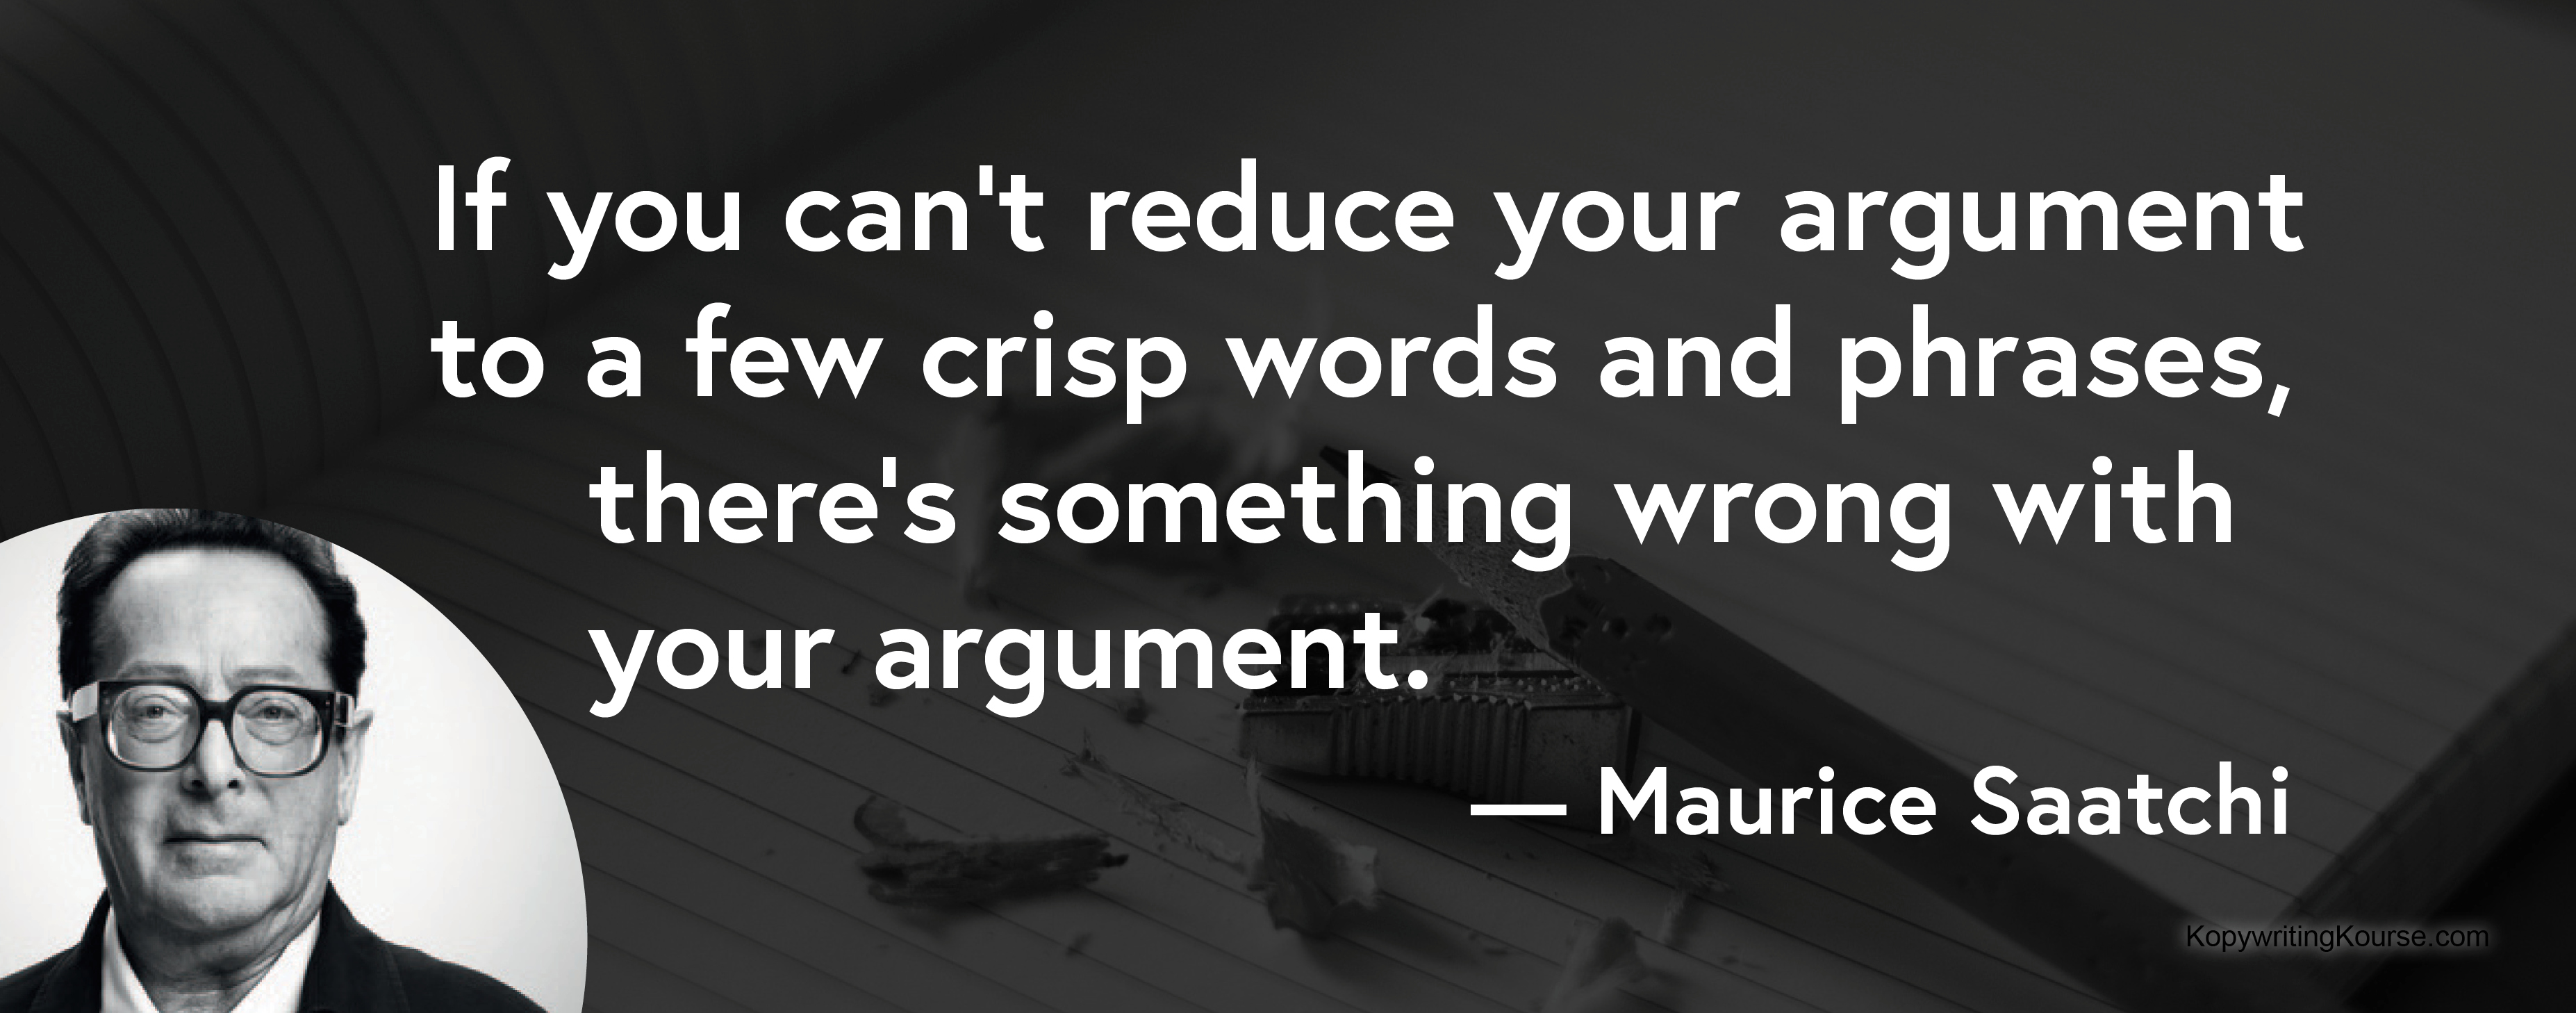 Maurice Saatchi quote few crisp words